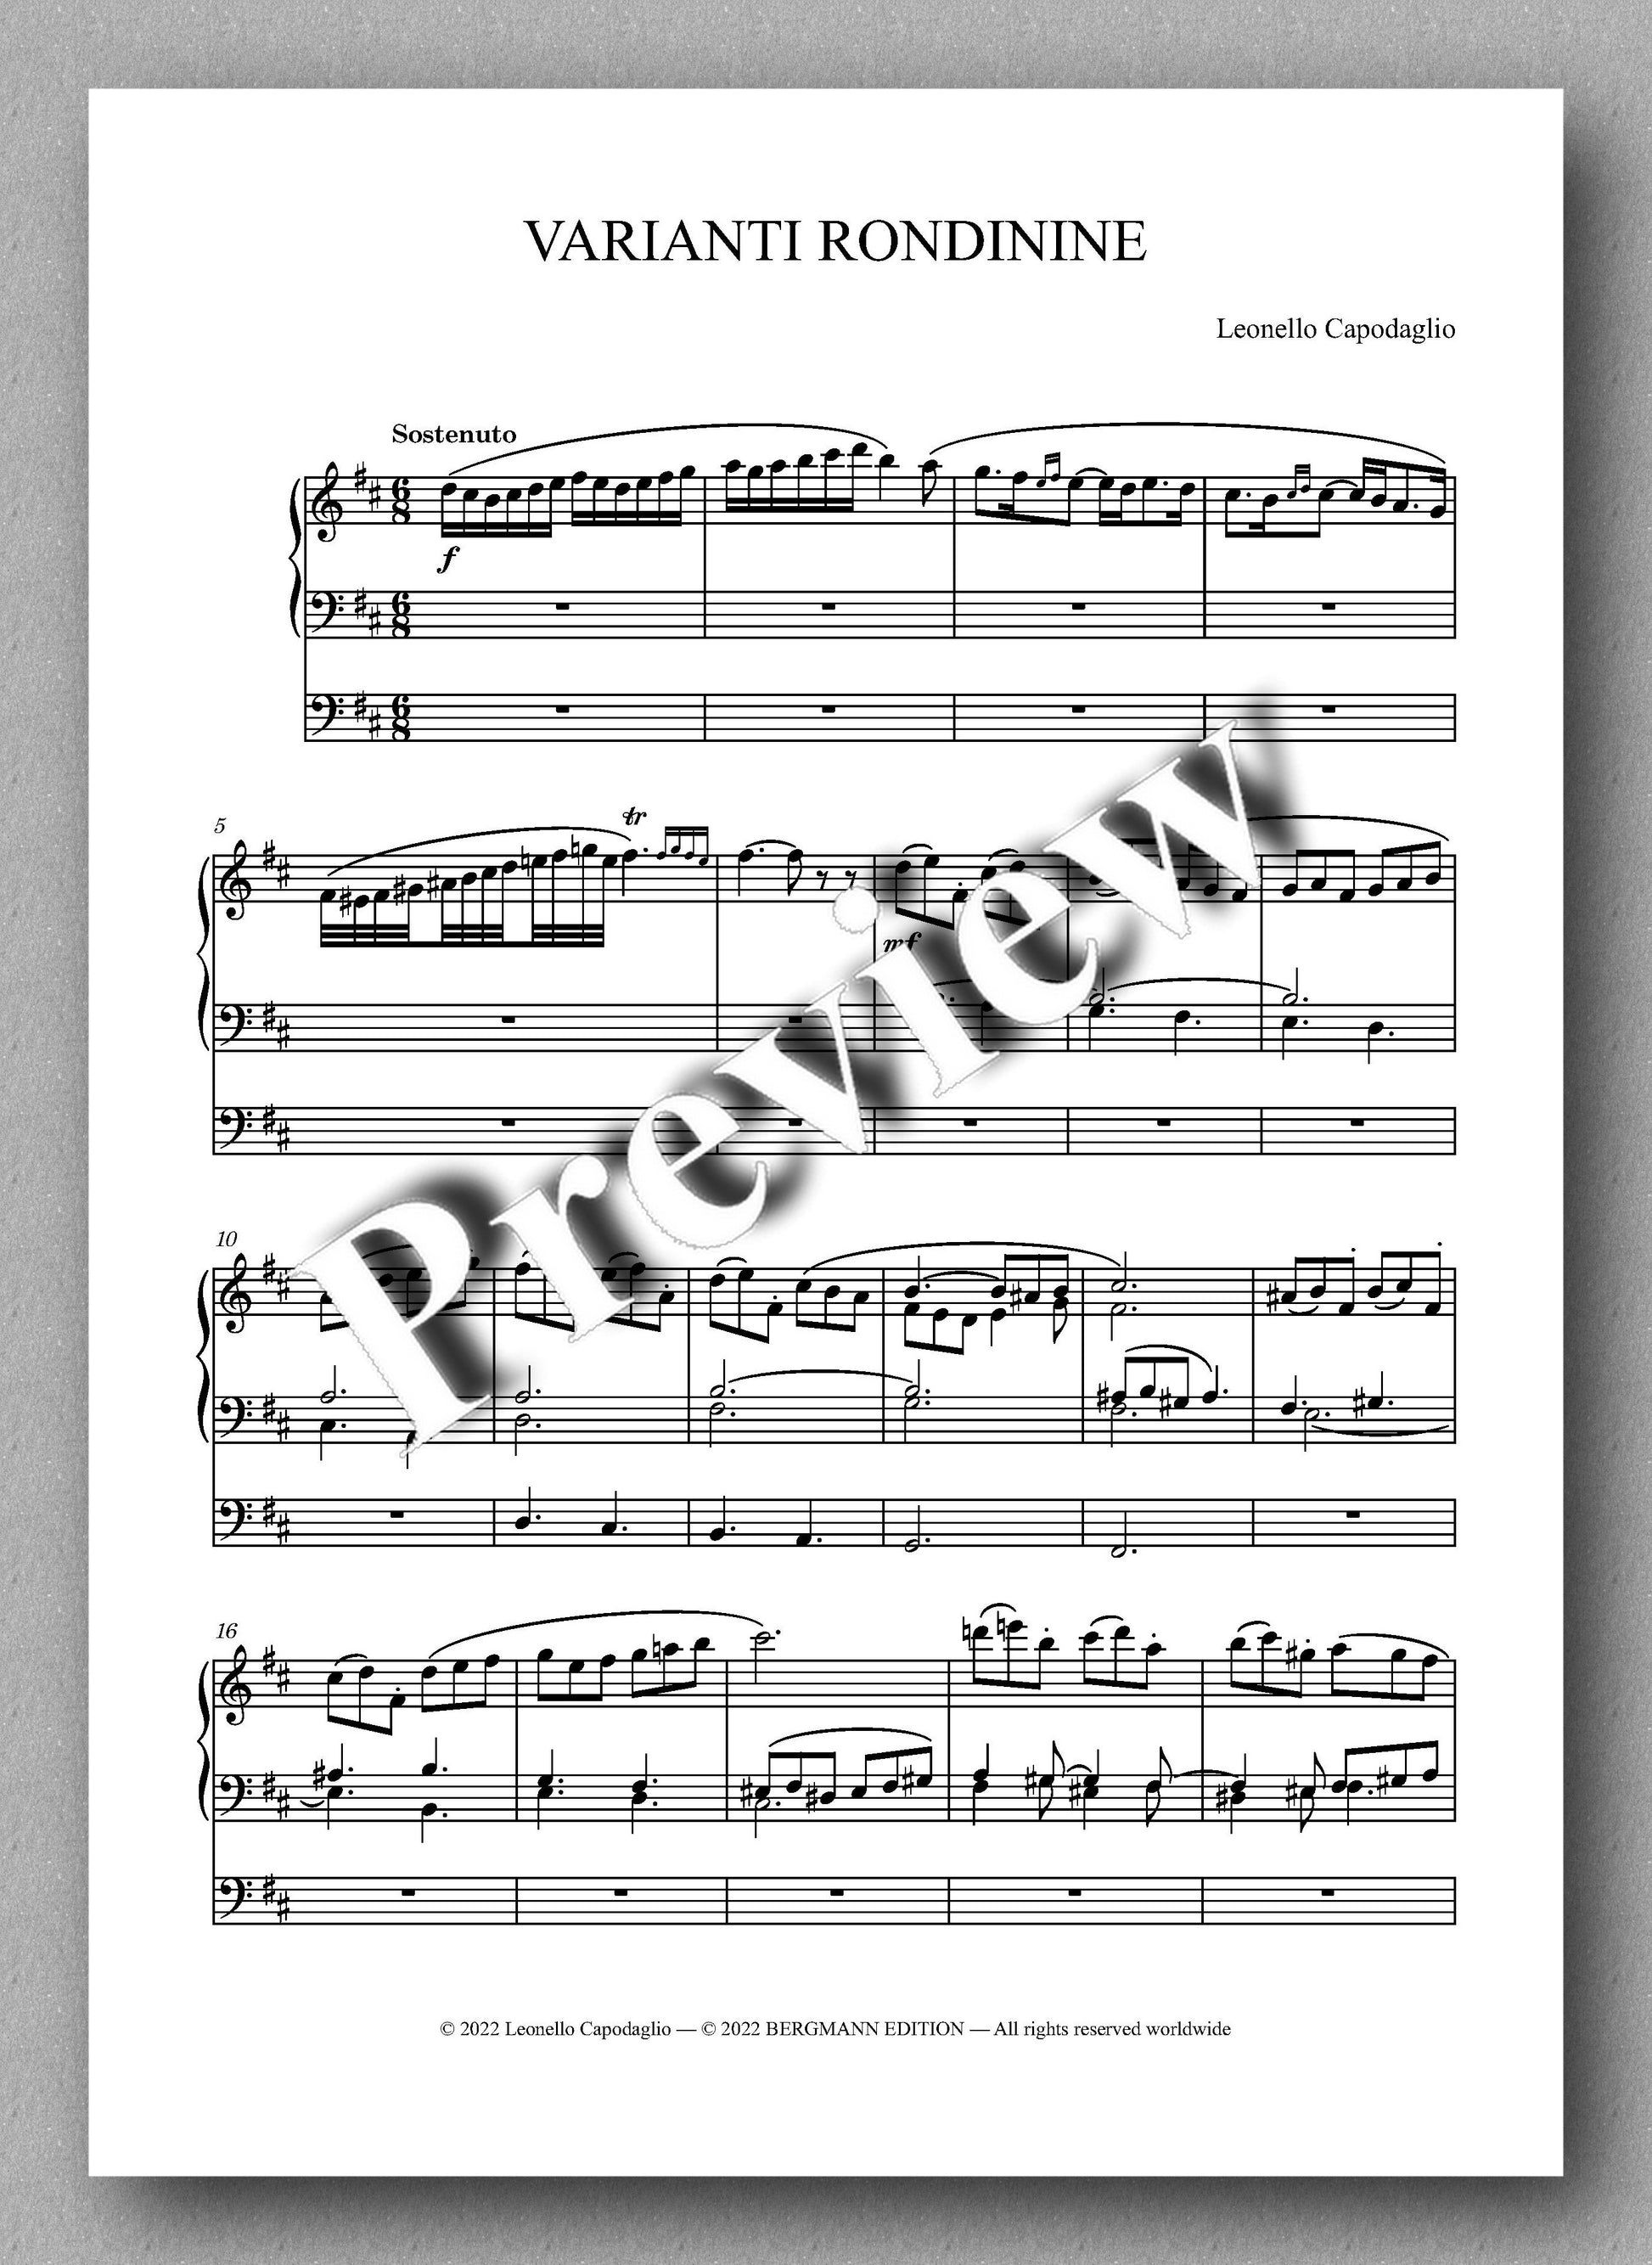 VARIANTI RONDININE by  Leonello Capodaglio - preview of the music score 1